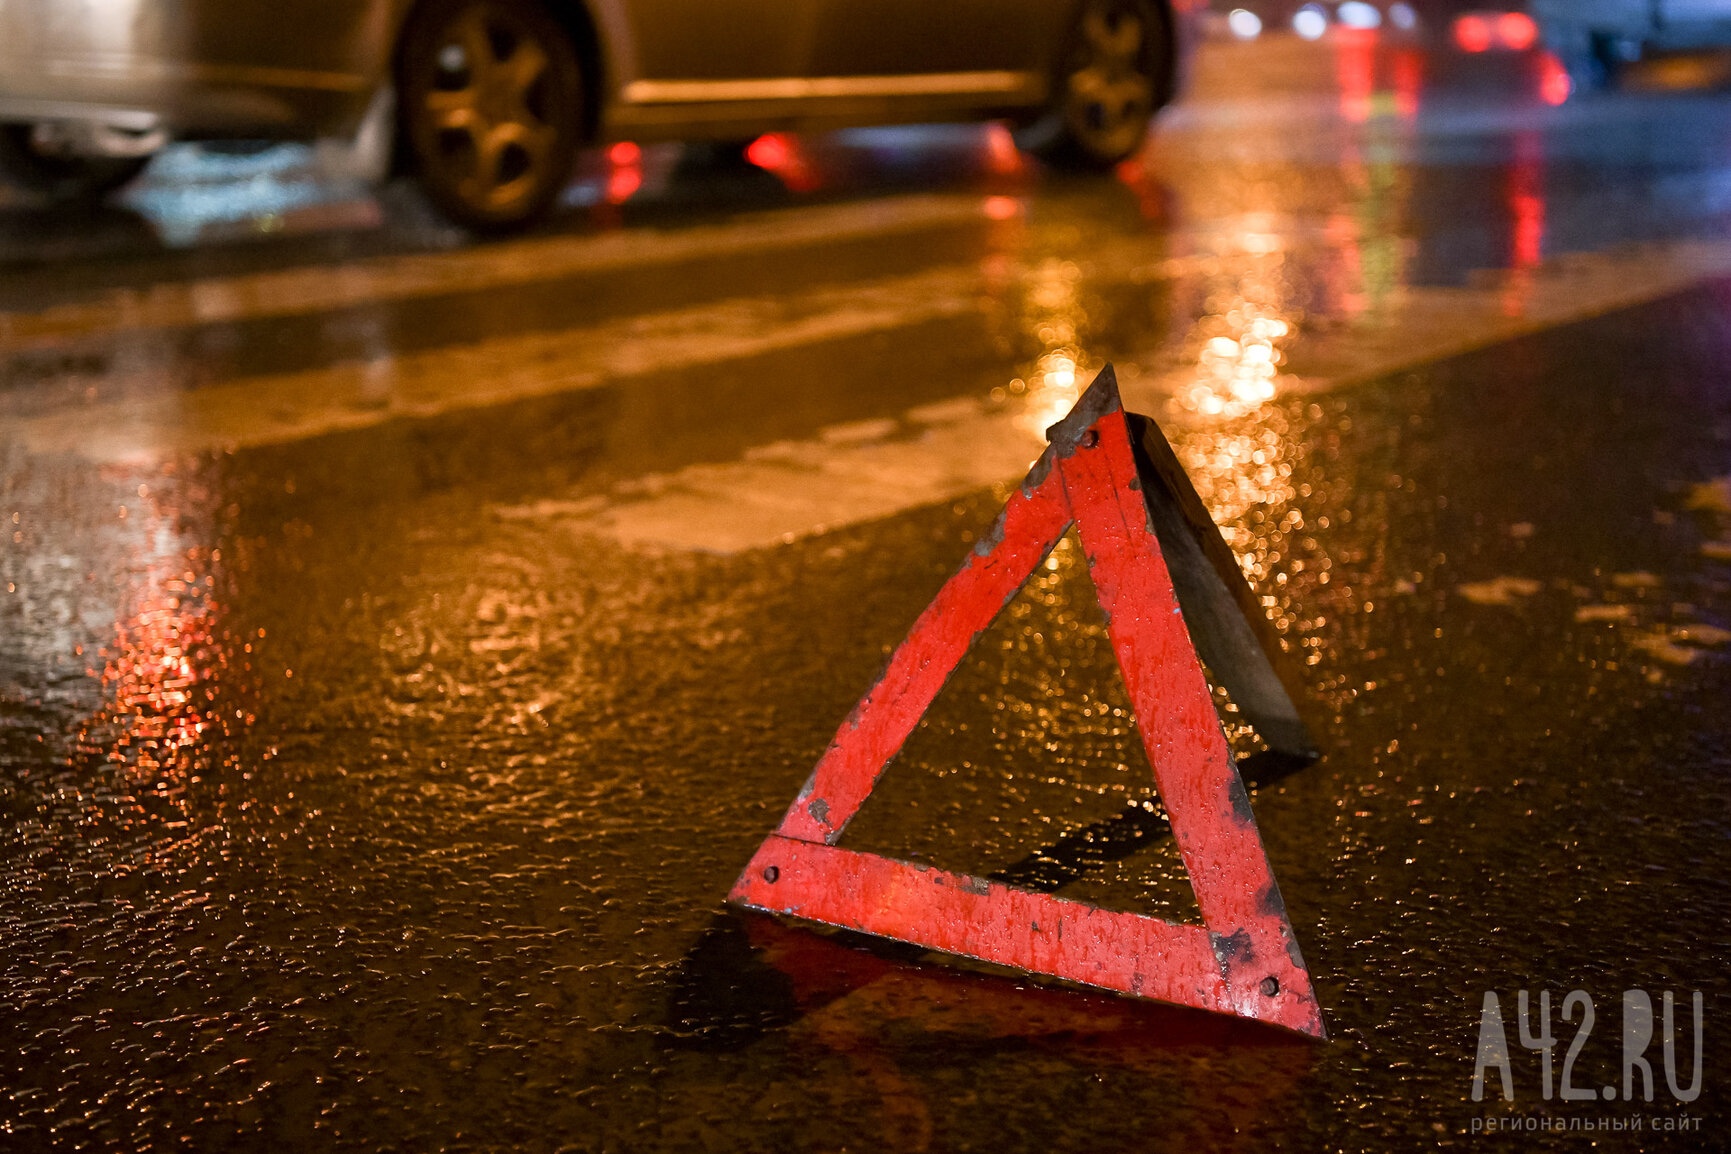 Соцсети: в Кузбассе автомобиль сбил пешехода